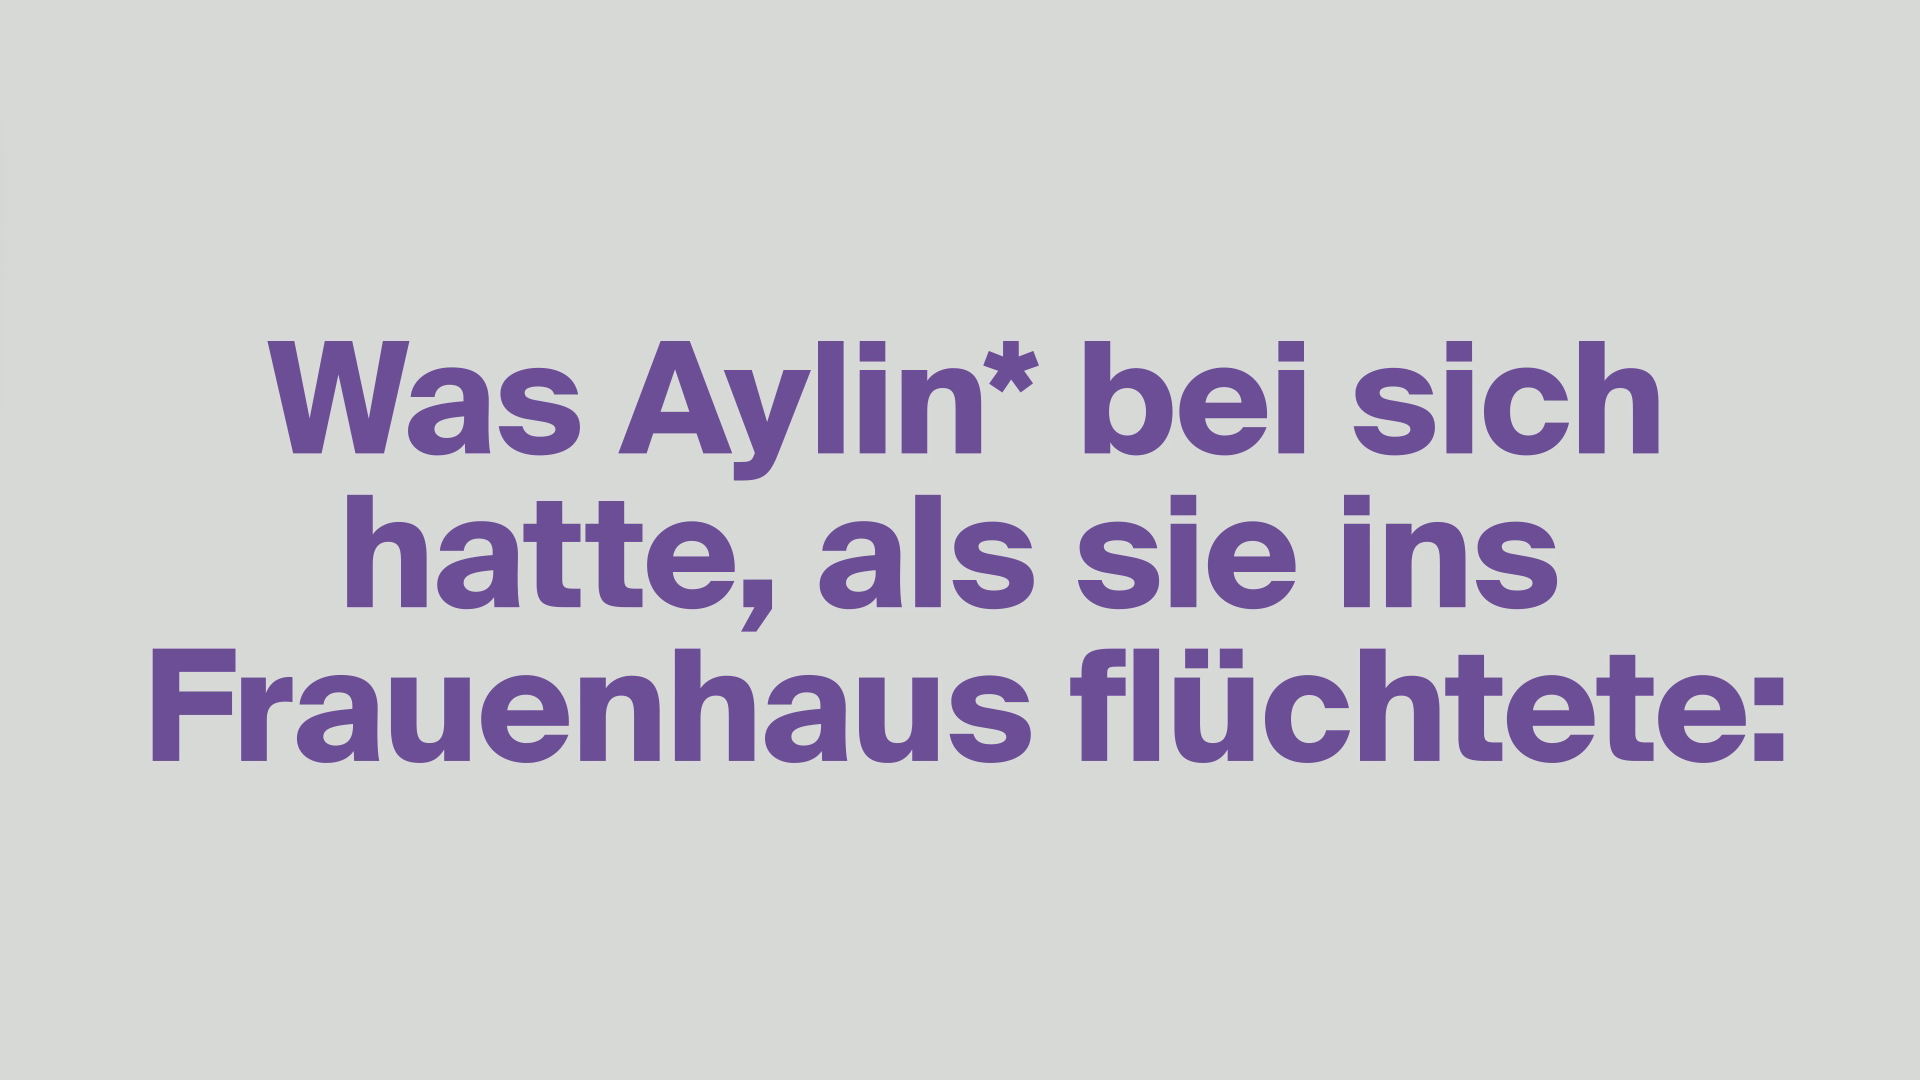 Picture with the text "Was Aylin* bei sich hatte, als sie ins Frauenhaus fluchtete"